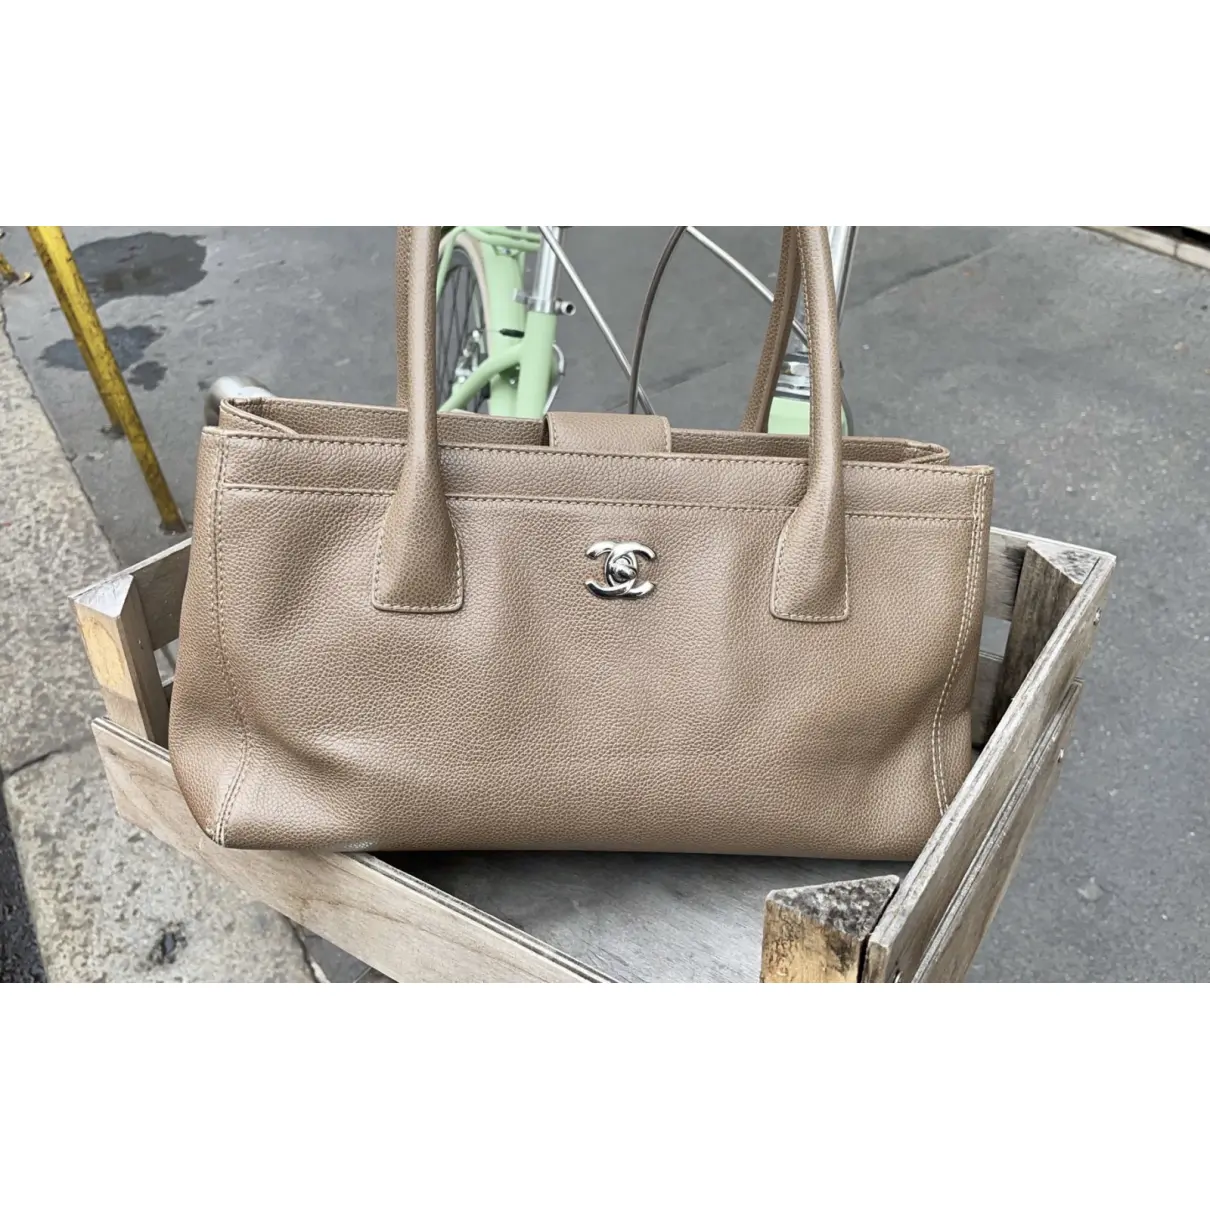 Executive leather handbag Chanel